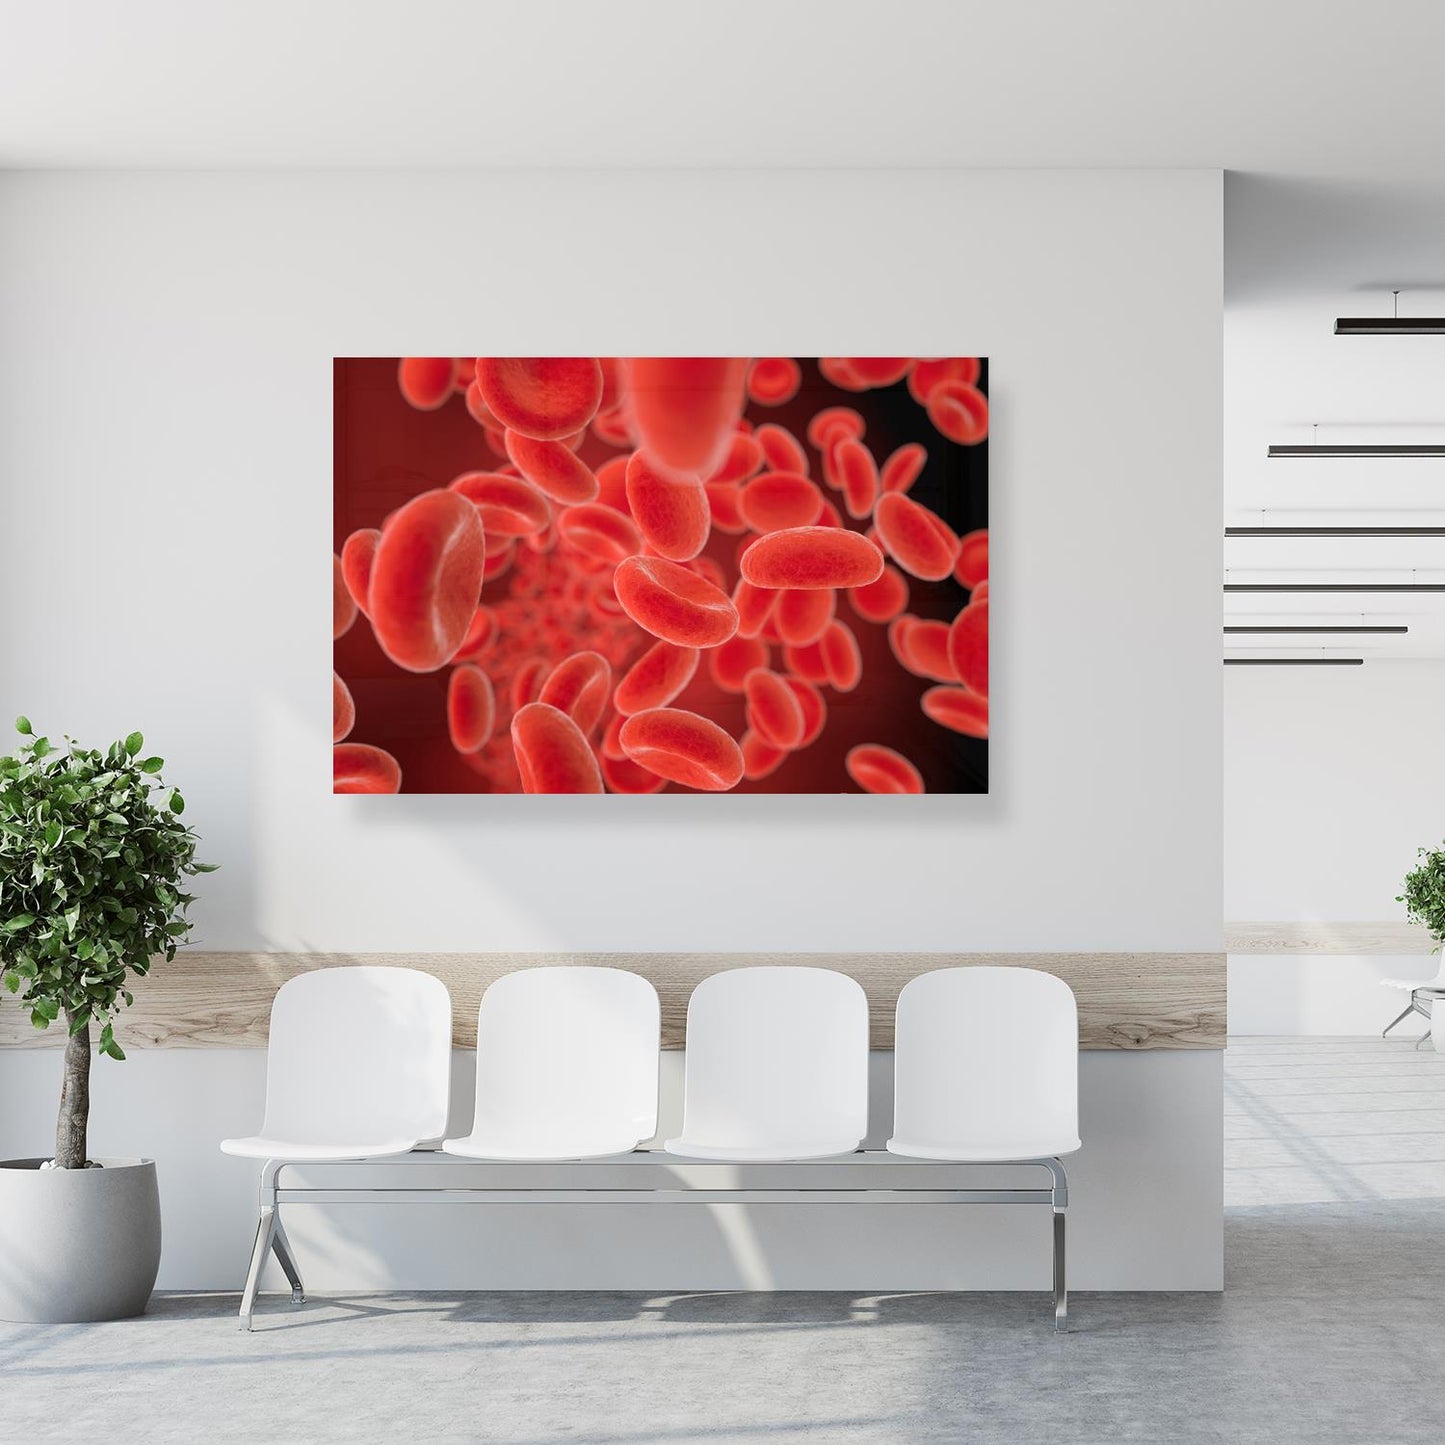 Medical Office Art - Red blood cells flowing - Einrichtungsbeispiel Foto